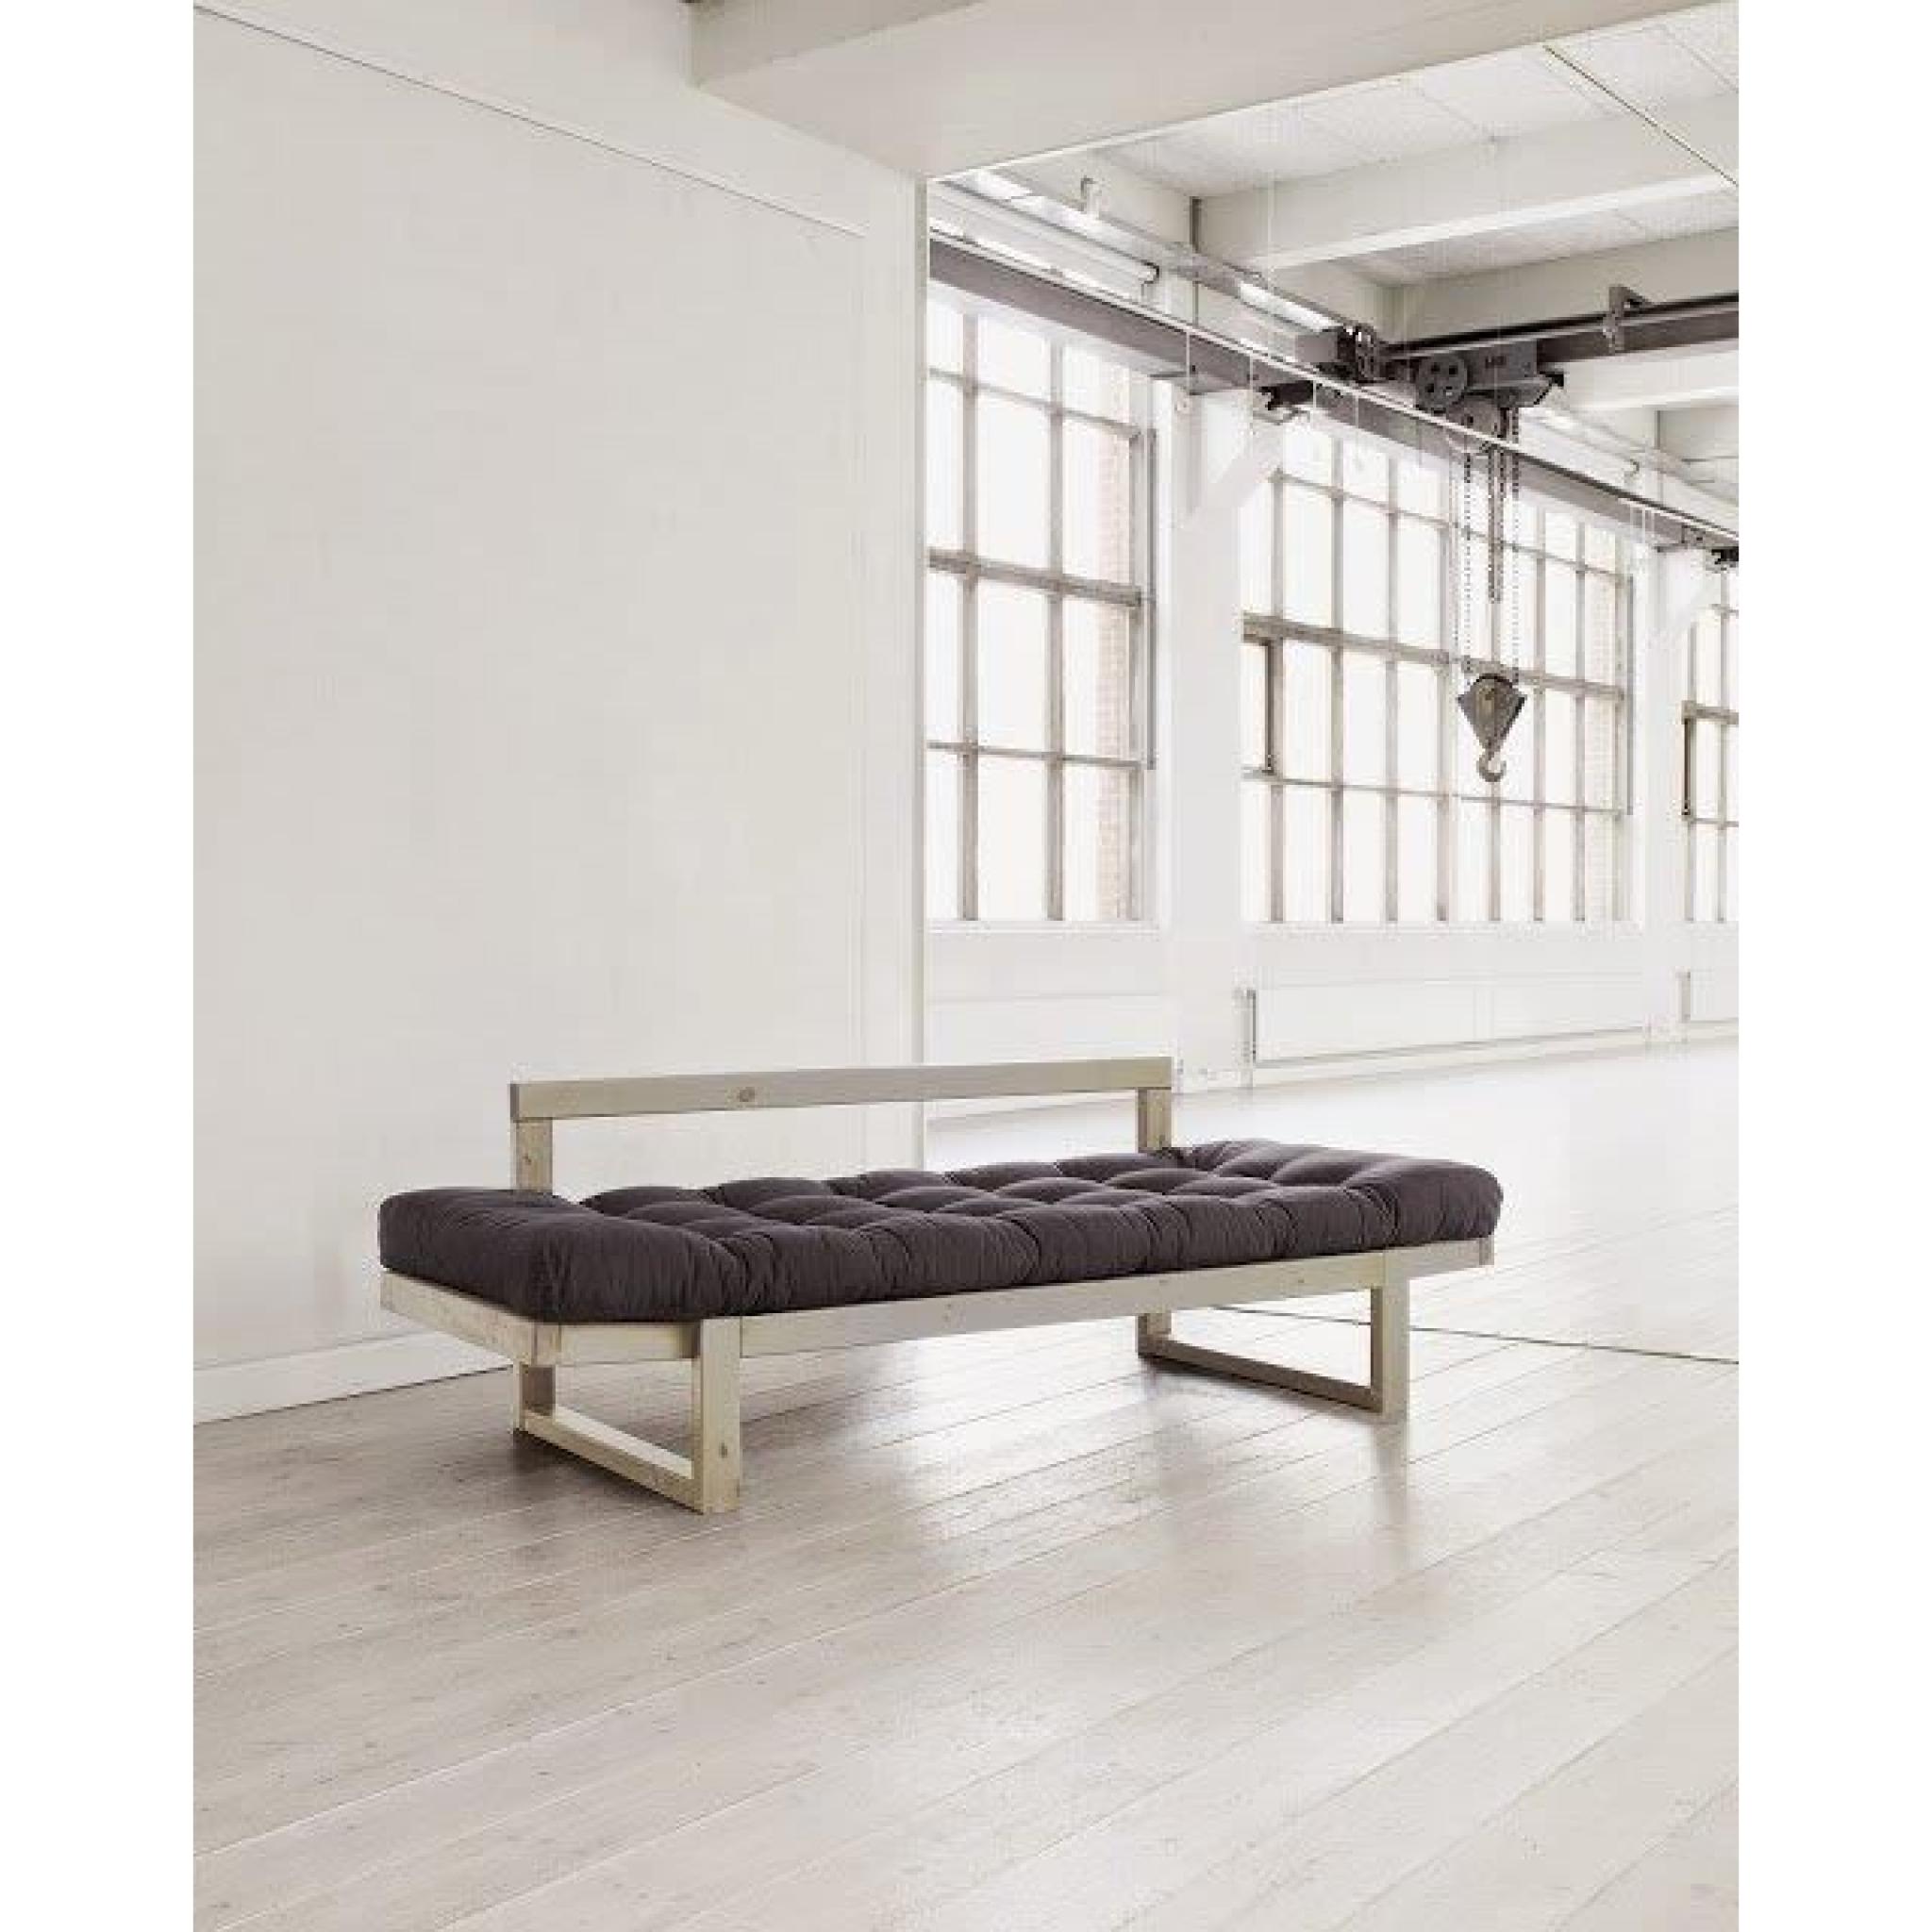 Banquette méridienne style scandinave futon grey graphite EDGE couchage 75*200cm pas cher